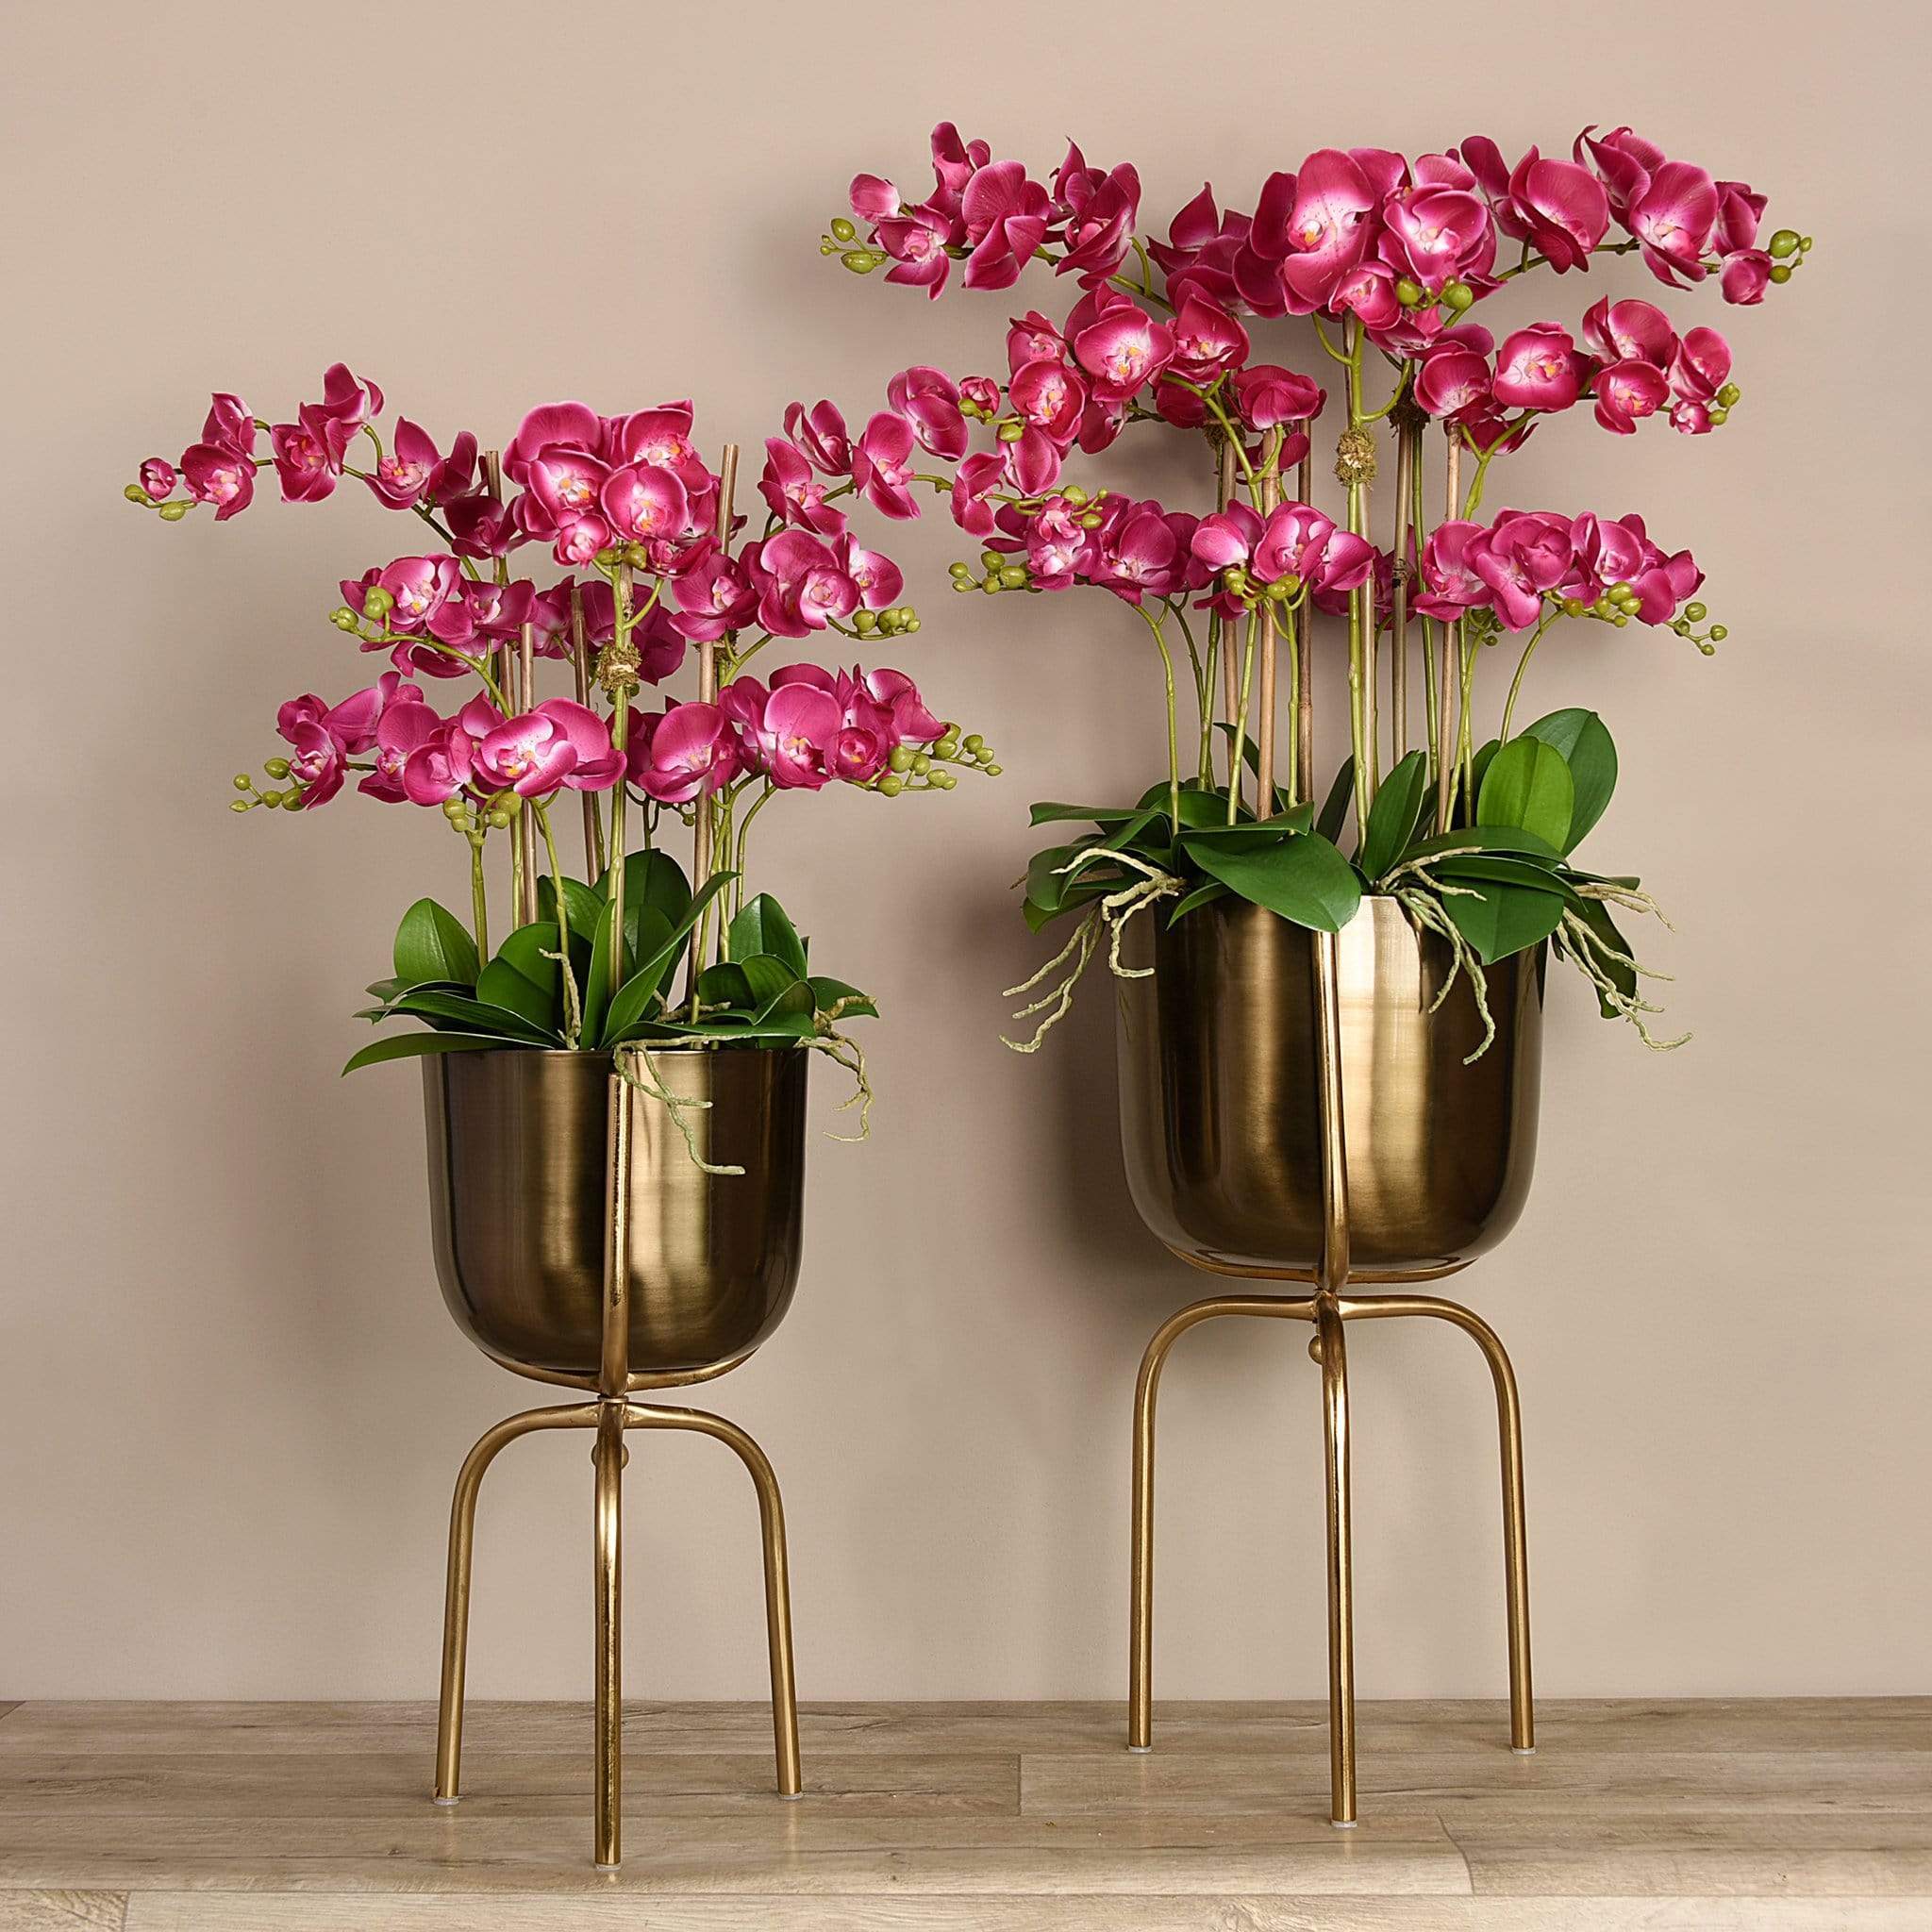 Artificial Orchid Arrangement in Gold Standing Vase - Bloomr